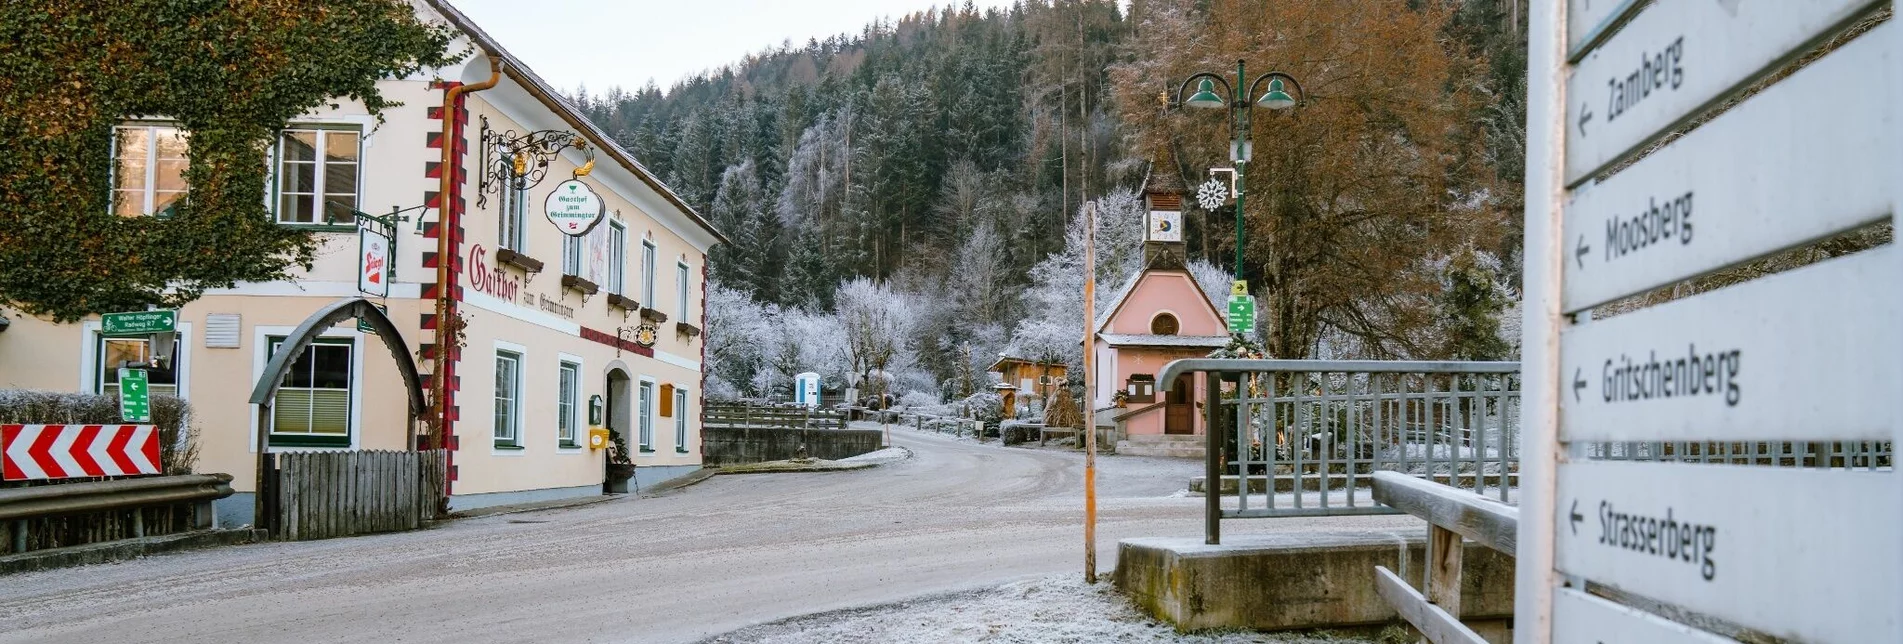 Winter Hiking Winter hiking - Niederöblarn Village Tour - Touren-Impression #1 | © Erlebnisregion Schladming-Dachstein